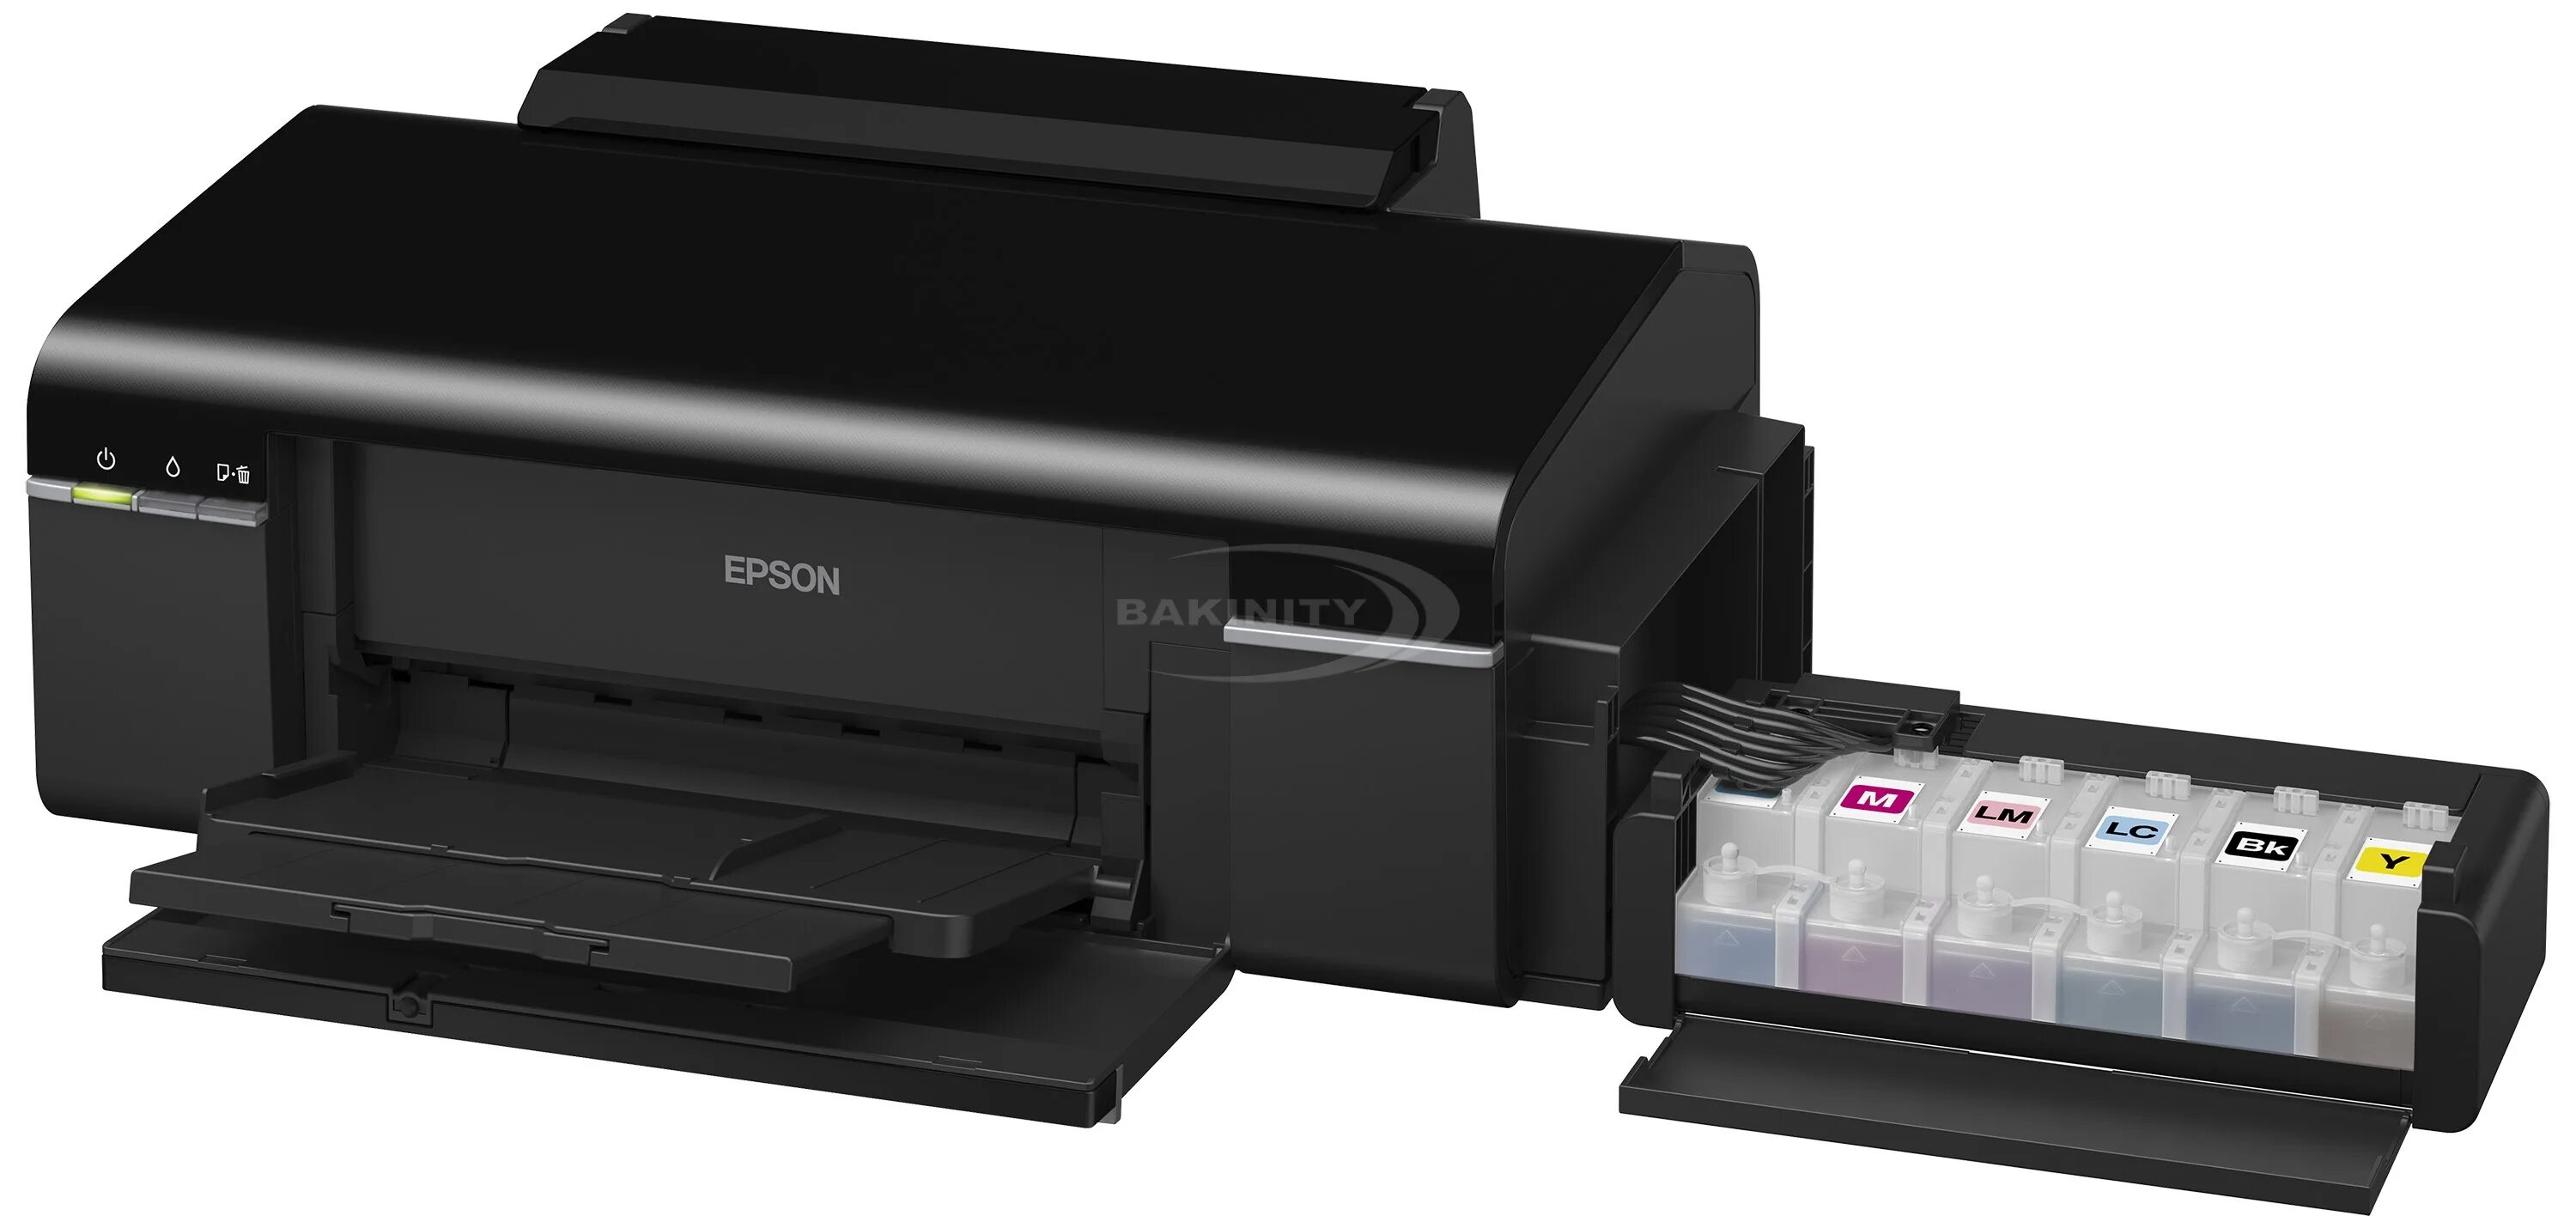 Купить л 800. Эпсон л800. Цветной принтер Epson l800. Принтер Epson l805. Цветной струйный принтер - Epson l800.